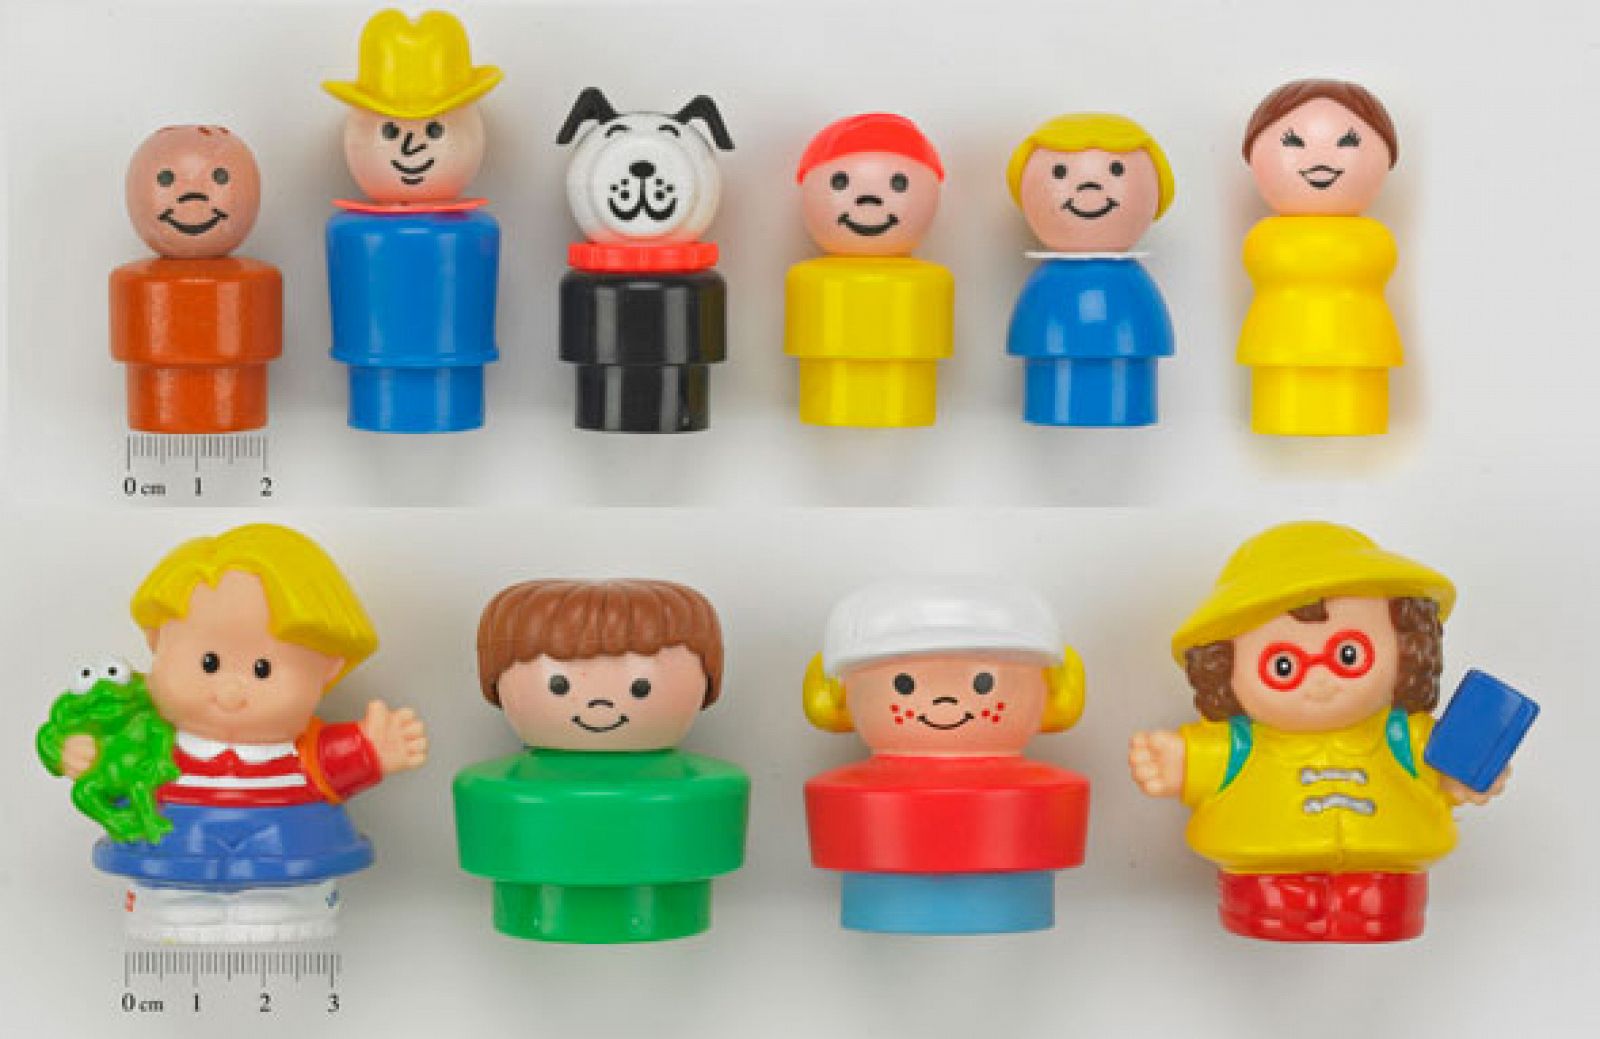 Comparación de los muñecos de Mattel fabricados por Fisher Price antes de 1991 (arriba) con los fabricados a partir de ese año (abajo).